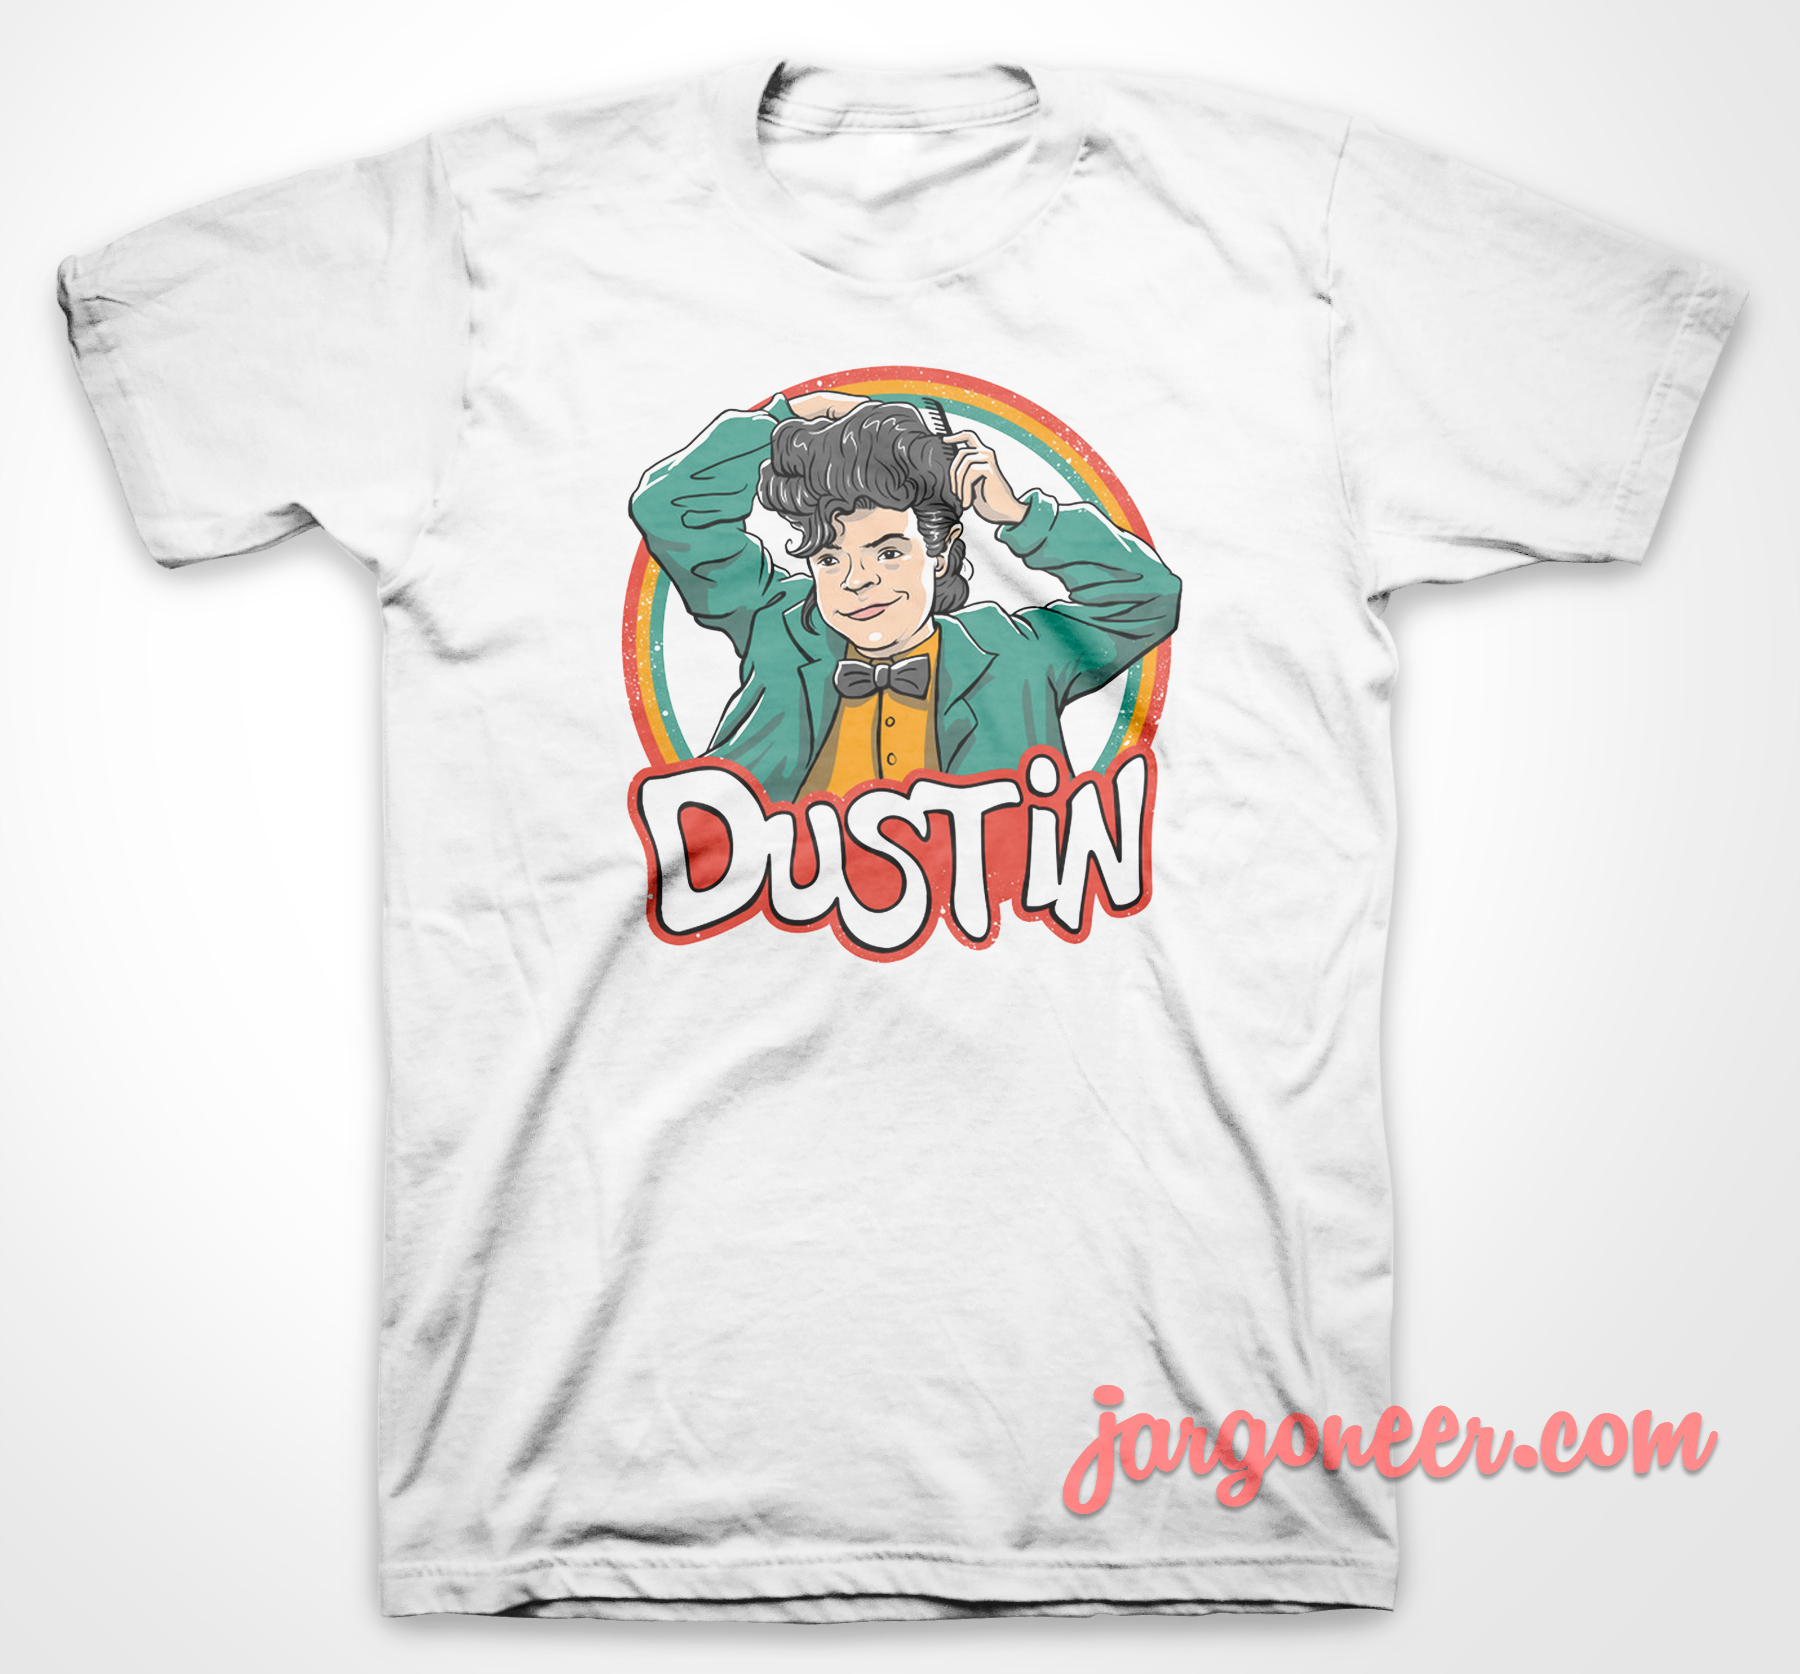 Dustin Retro Style - Shop Unique Graphic Cool Shirt Designs